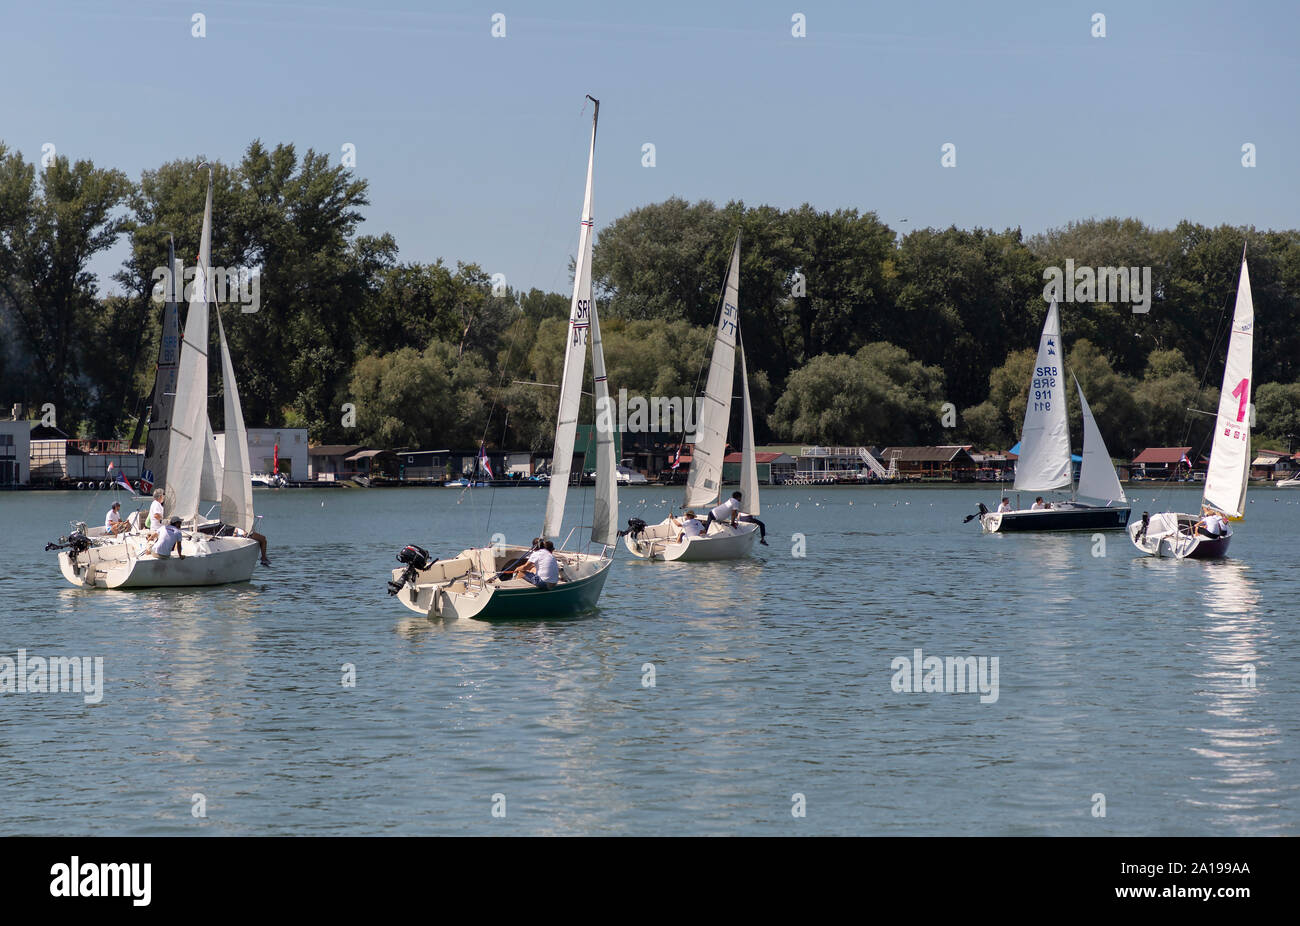 Belgrado, Serbia, Agosto 18, 2019: Tre-persona scuderie concorrenti nella classe Micro regata a vela sul fiume Sava Rive Foto Stock